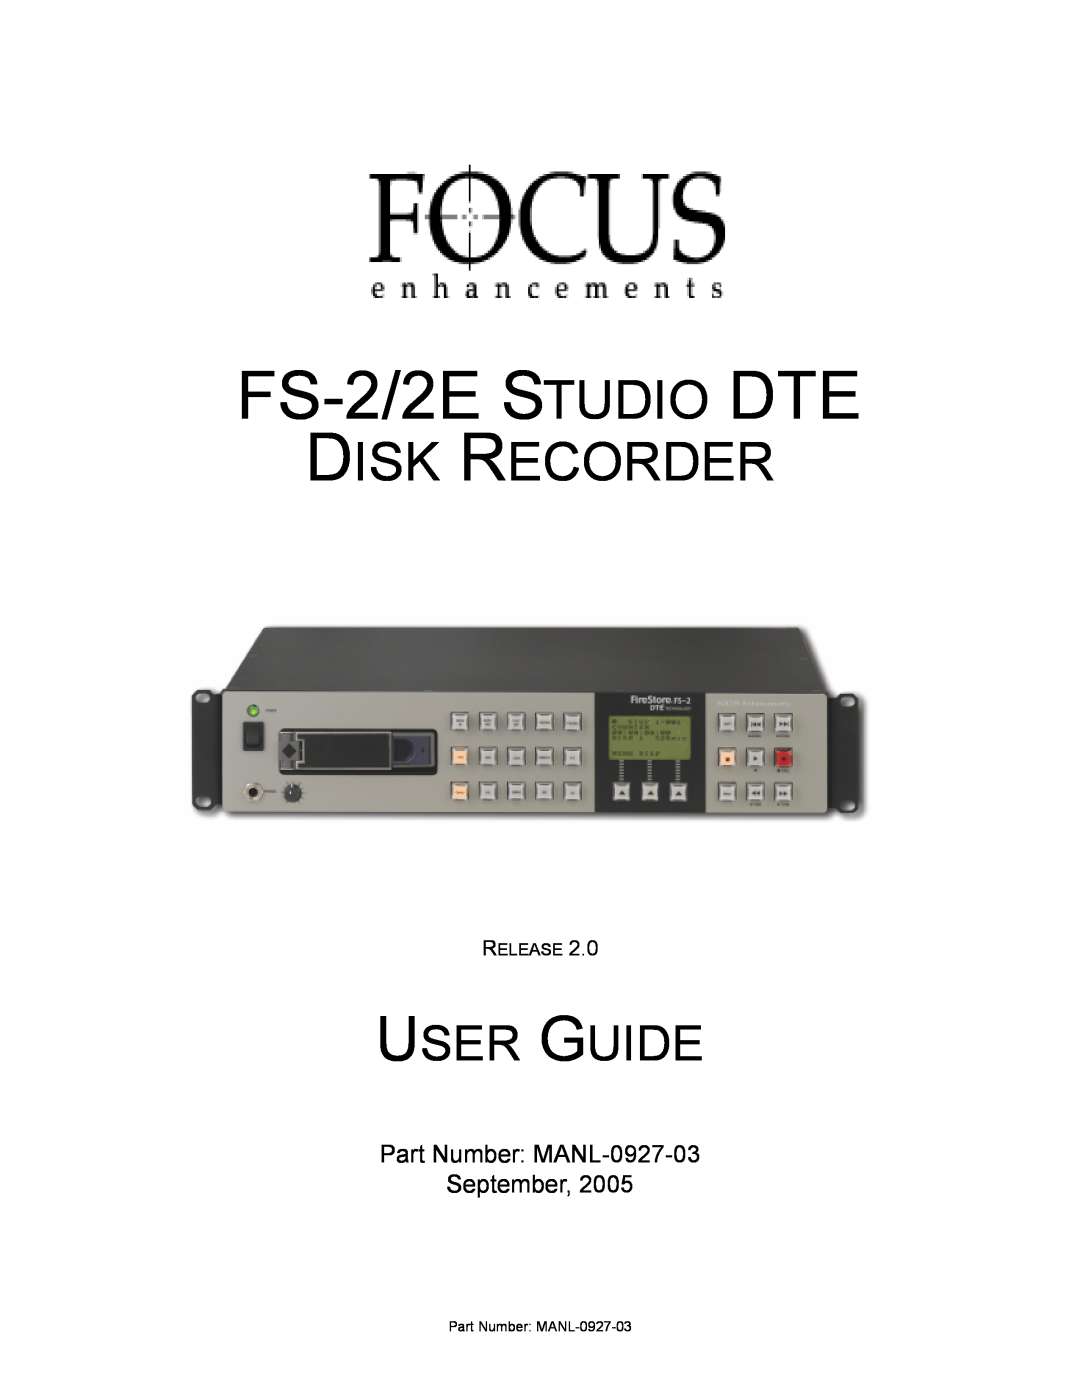 FOCUS Enhancements manual Part Number: MANL-0927-03 September, FS-2/2ESTUDIO DTE, Disk Recorder, User Guide 